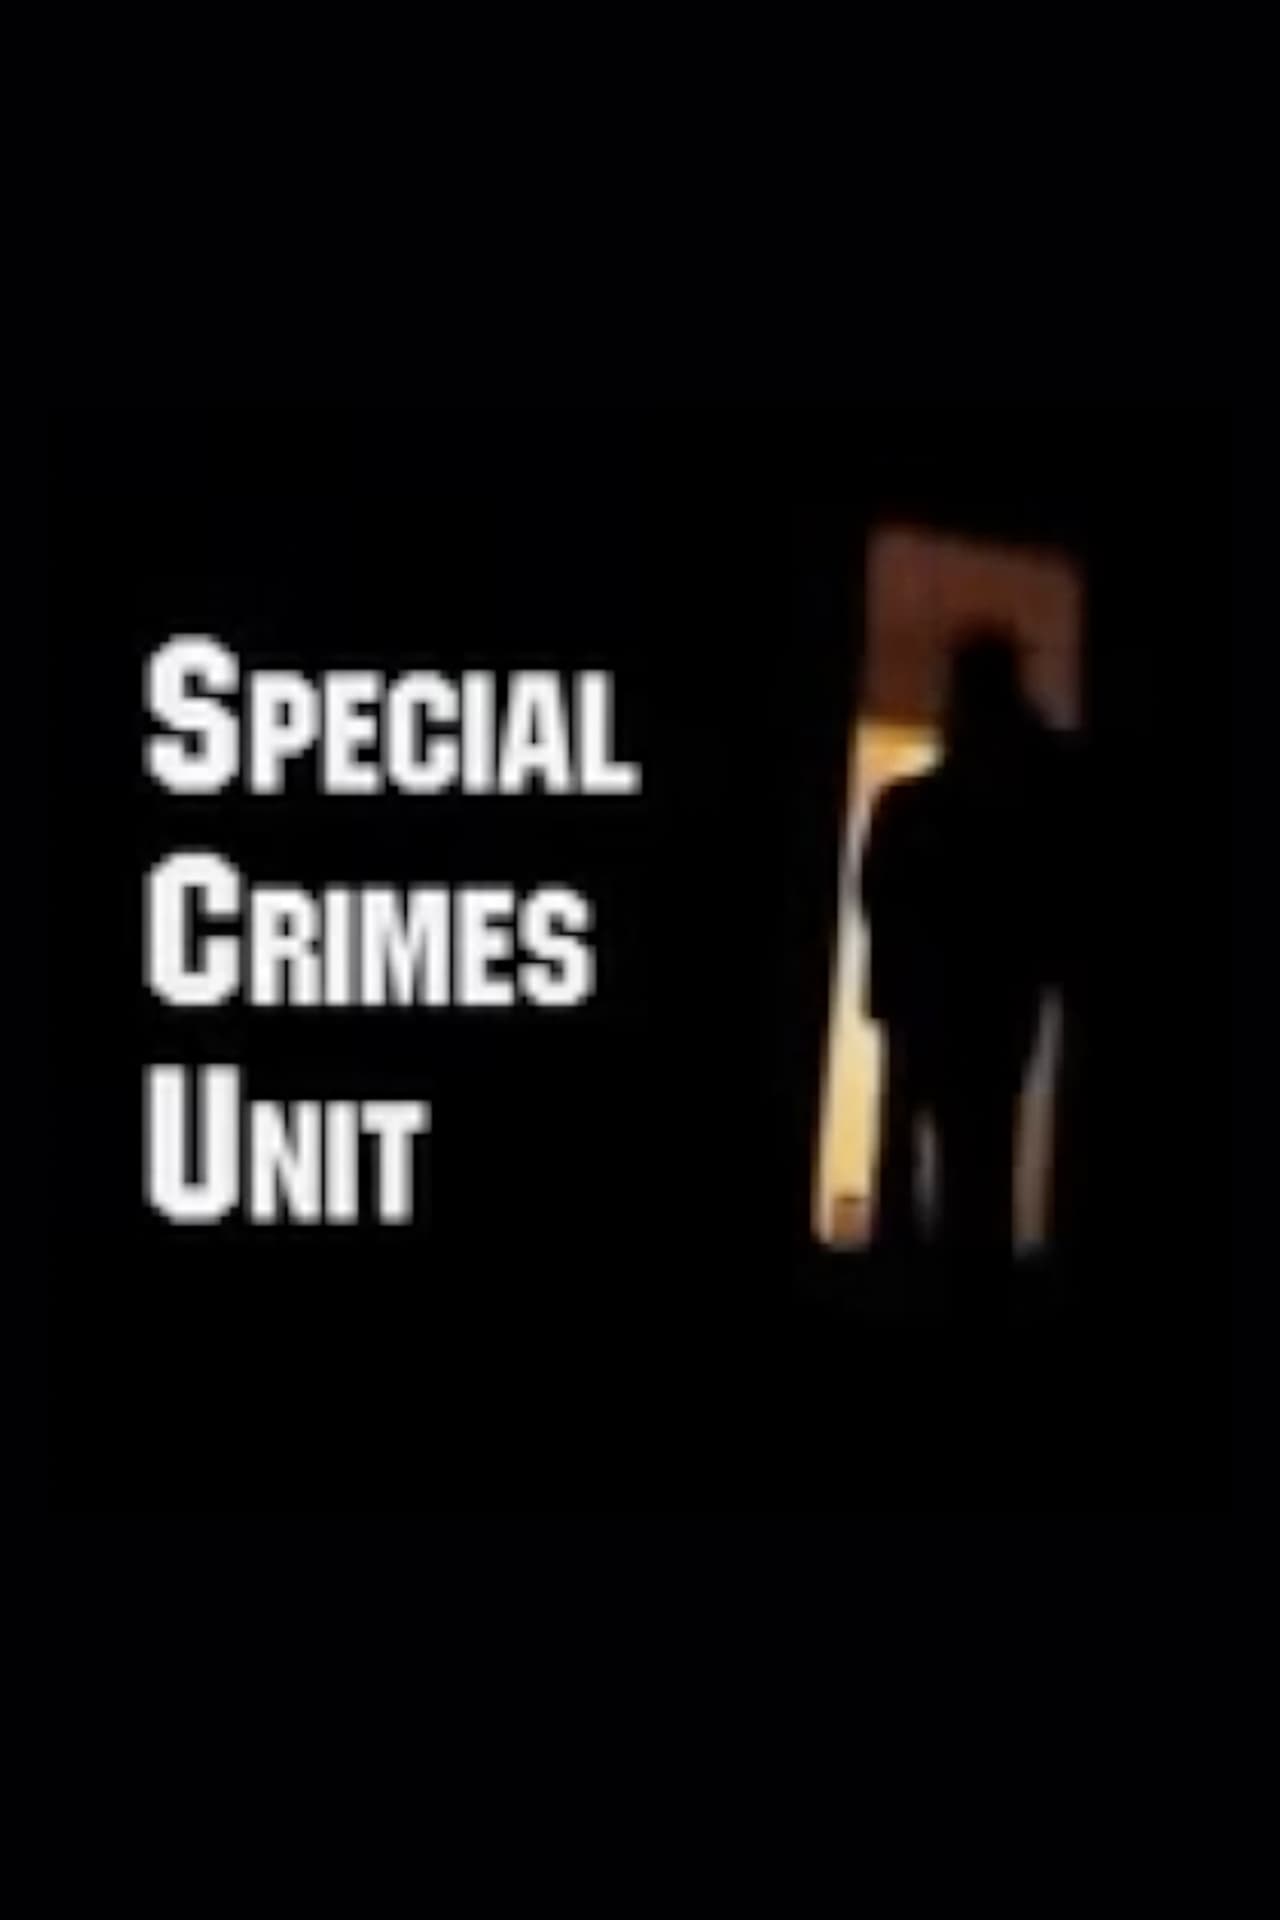 Special Crimes Unit